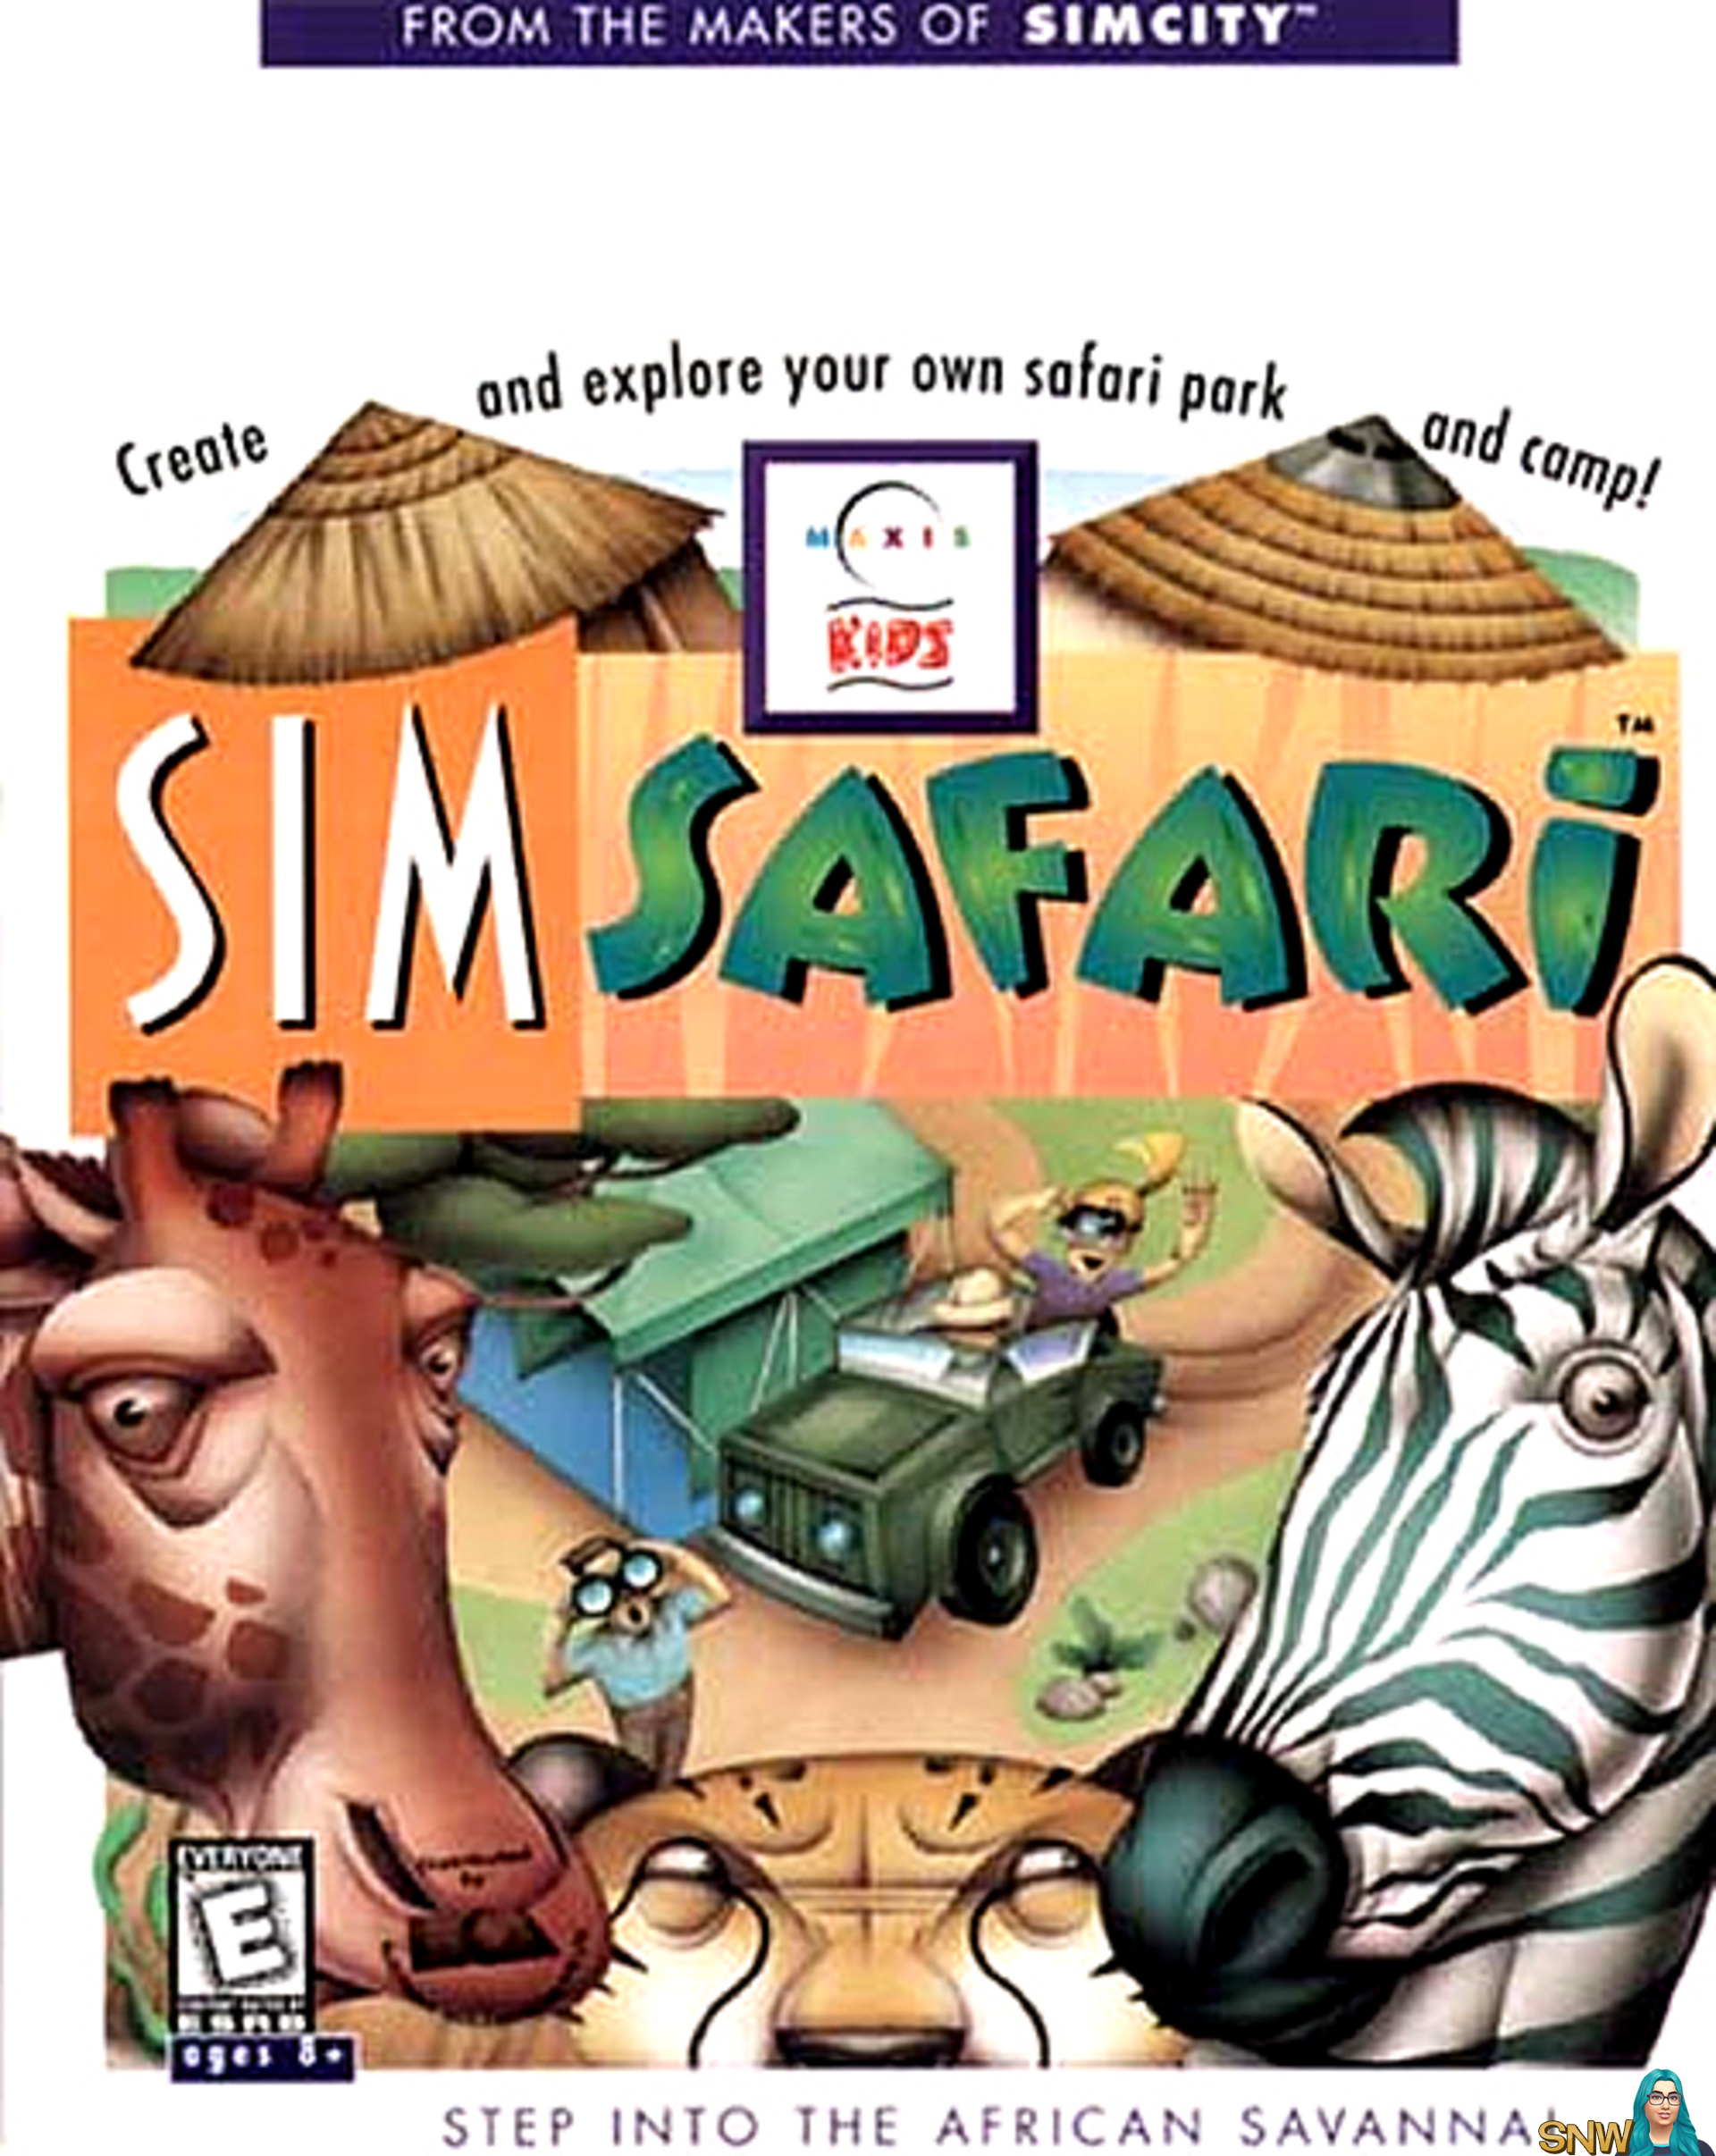 sim safari meaning